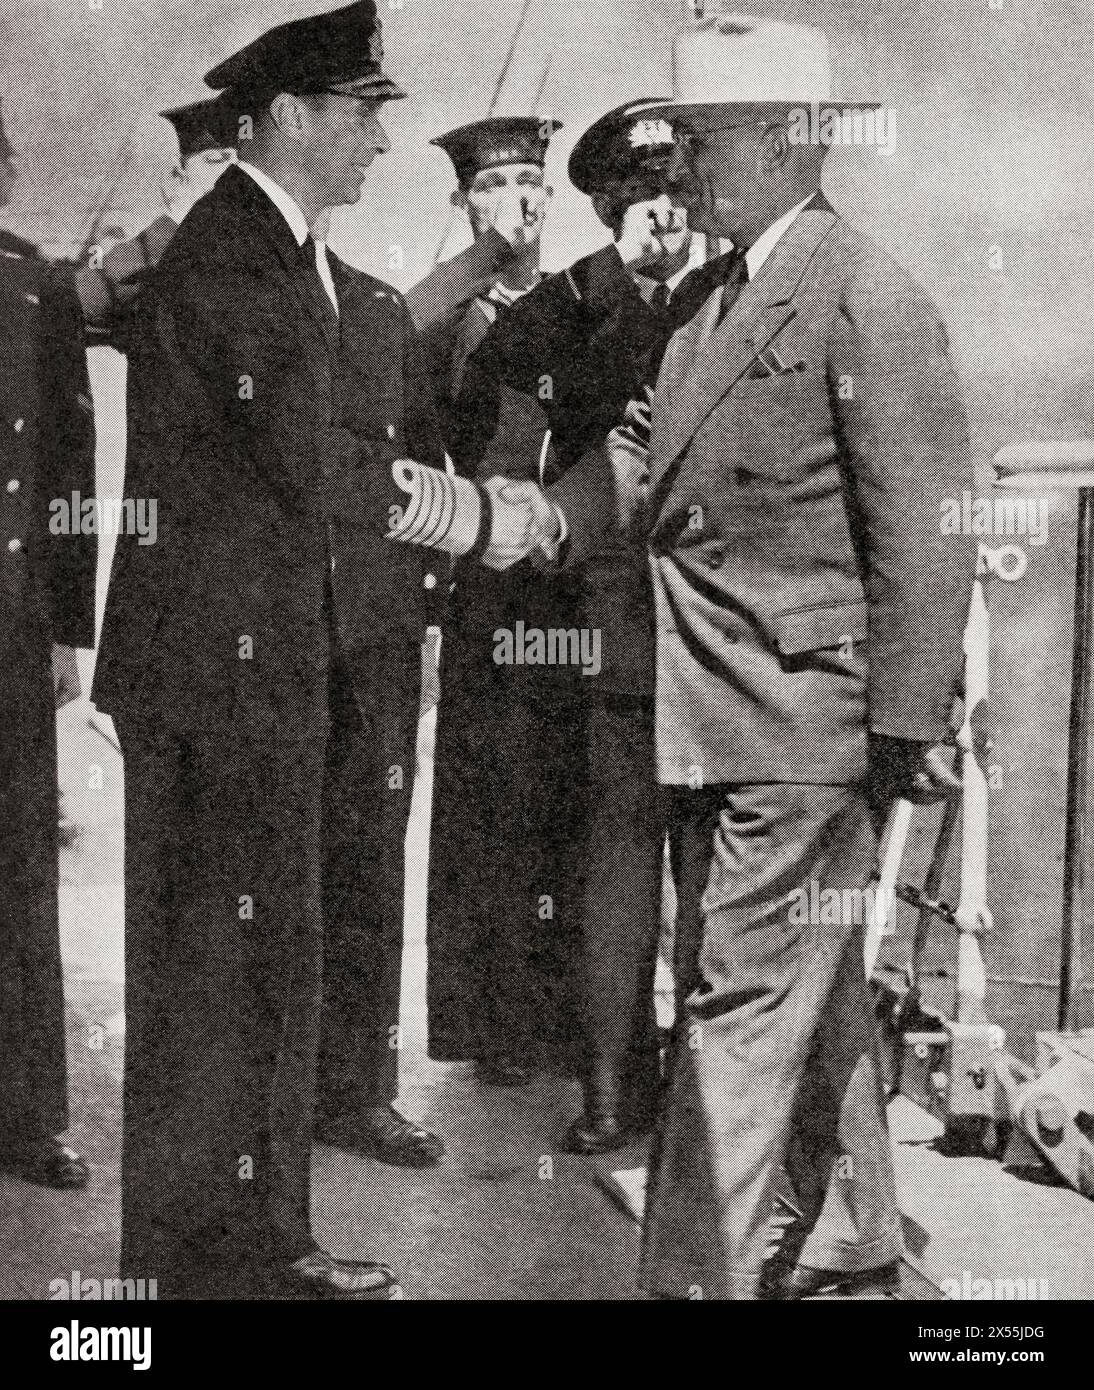 Das Treffen von König Georg VI. Von England und Präsident Truman an Bord des britischen Schlachtkreuzers HMS 'Renown', Plymouth, 2. August 1945. Georg VI., 1895–1952. König des Vereinigten Königreichs. Harry S. Truman, 1884–1972. 33. Präsident der Vereinigten Staaten von Amerika. Aus dem Krieg in Bildern, sechstes Jahr. Stockfoto